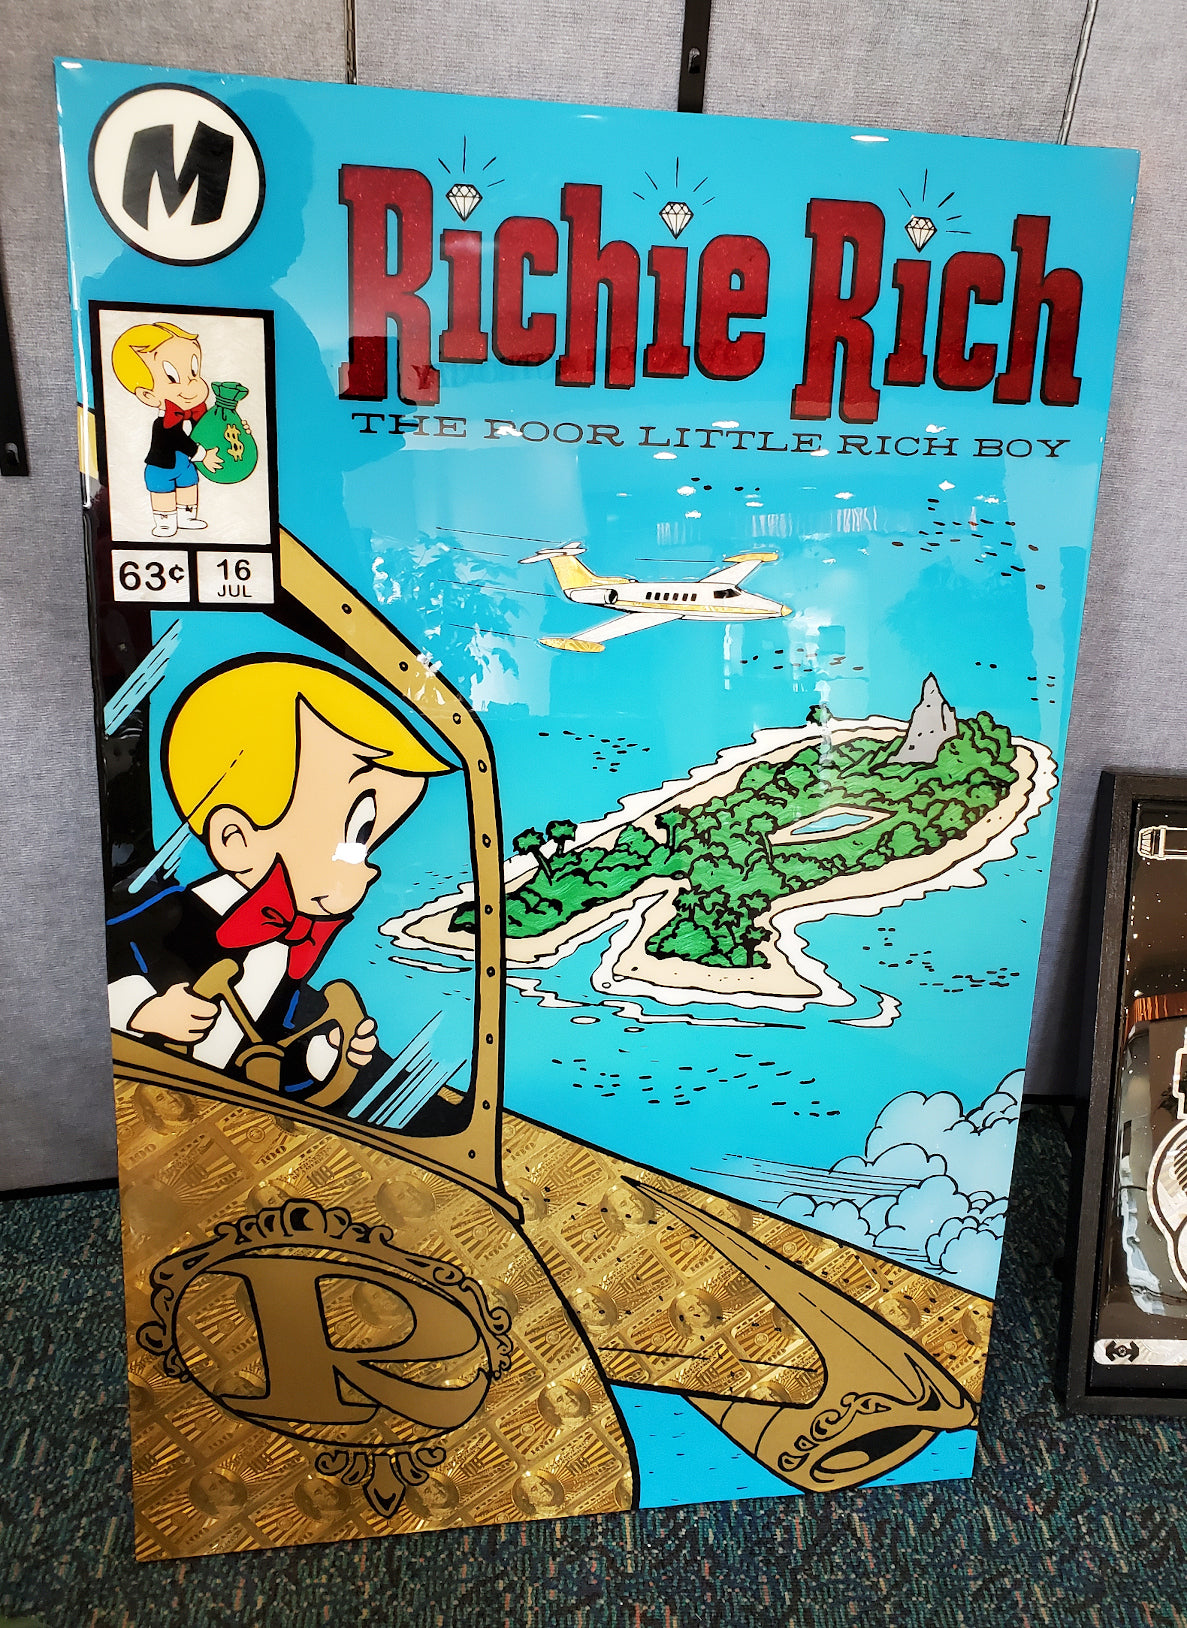 Richie Rich - Flight to Money i$land